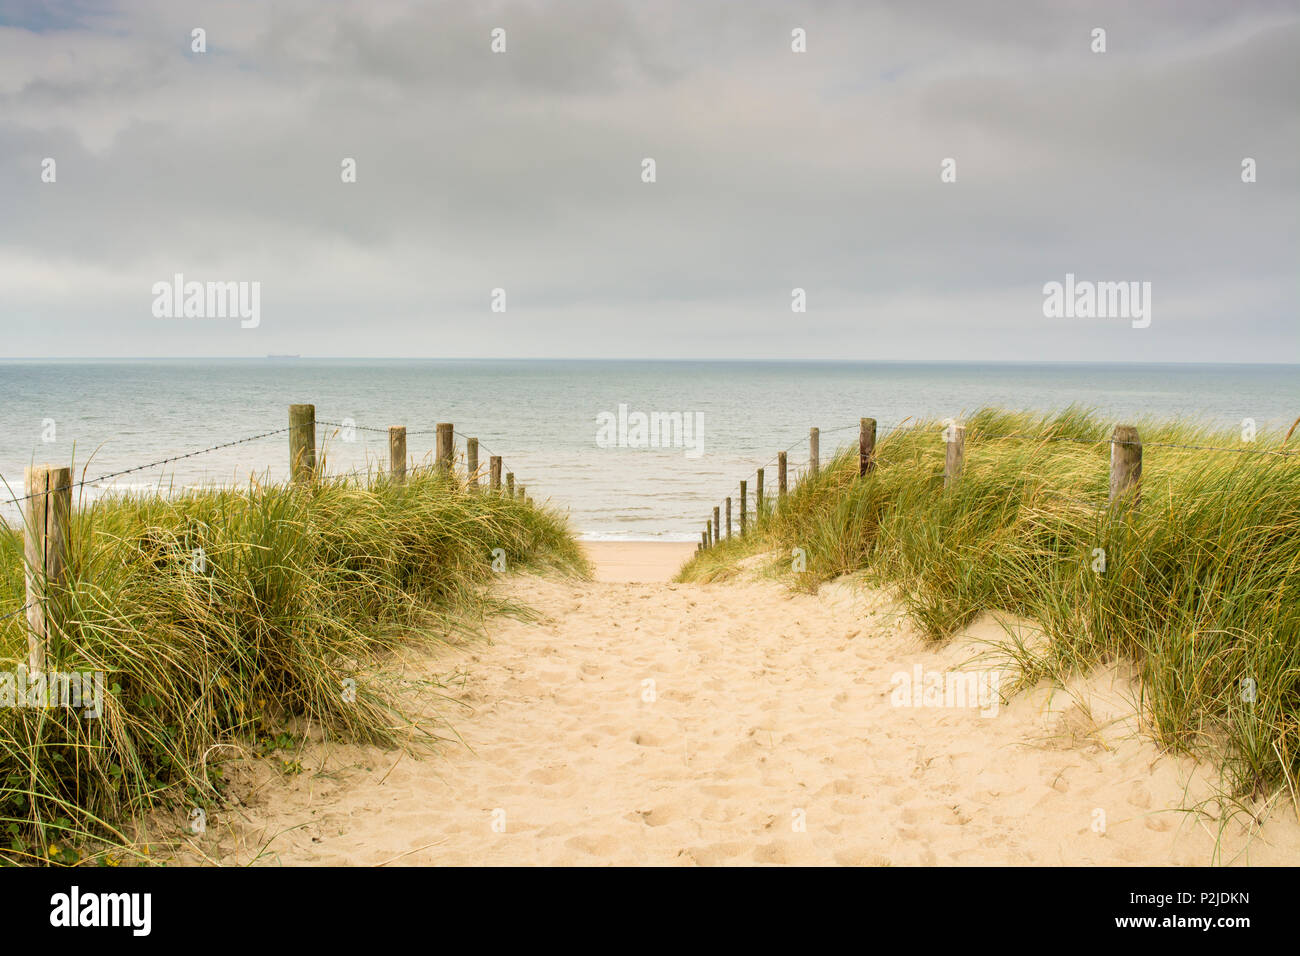 In tipico stile olandese vista sul mare con dune, sabbia, percorso marram erba, poli, cielo grigio con le nuvole Foto Stock